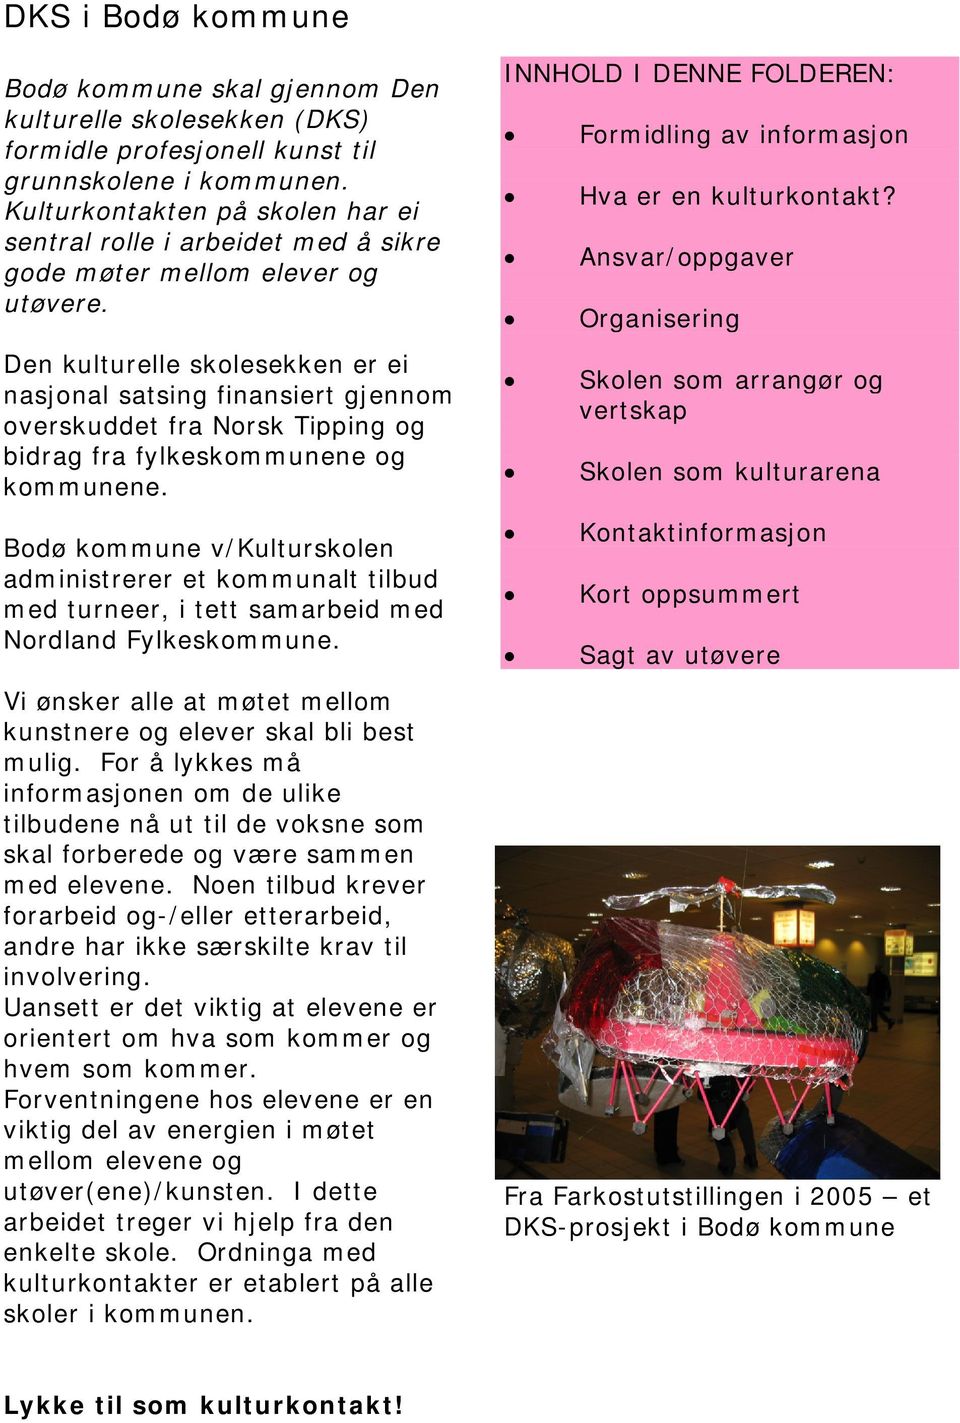 Den kulturelle skolesekken er ei nasjonal satsing finansiert gjennom overskuddet fra Norsk Tipping og bidrag fra fylkeskommunene og kommunene.